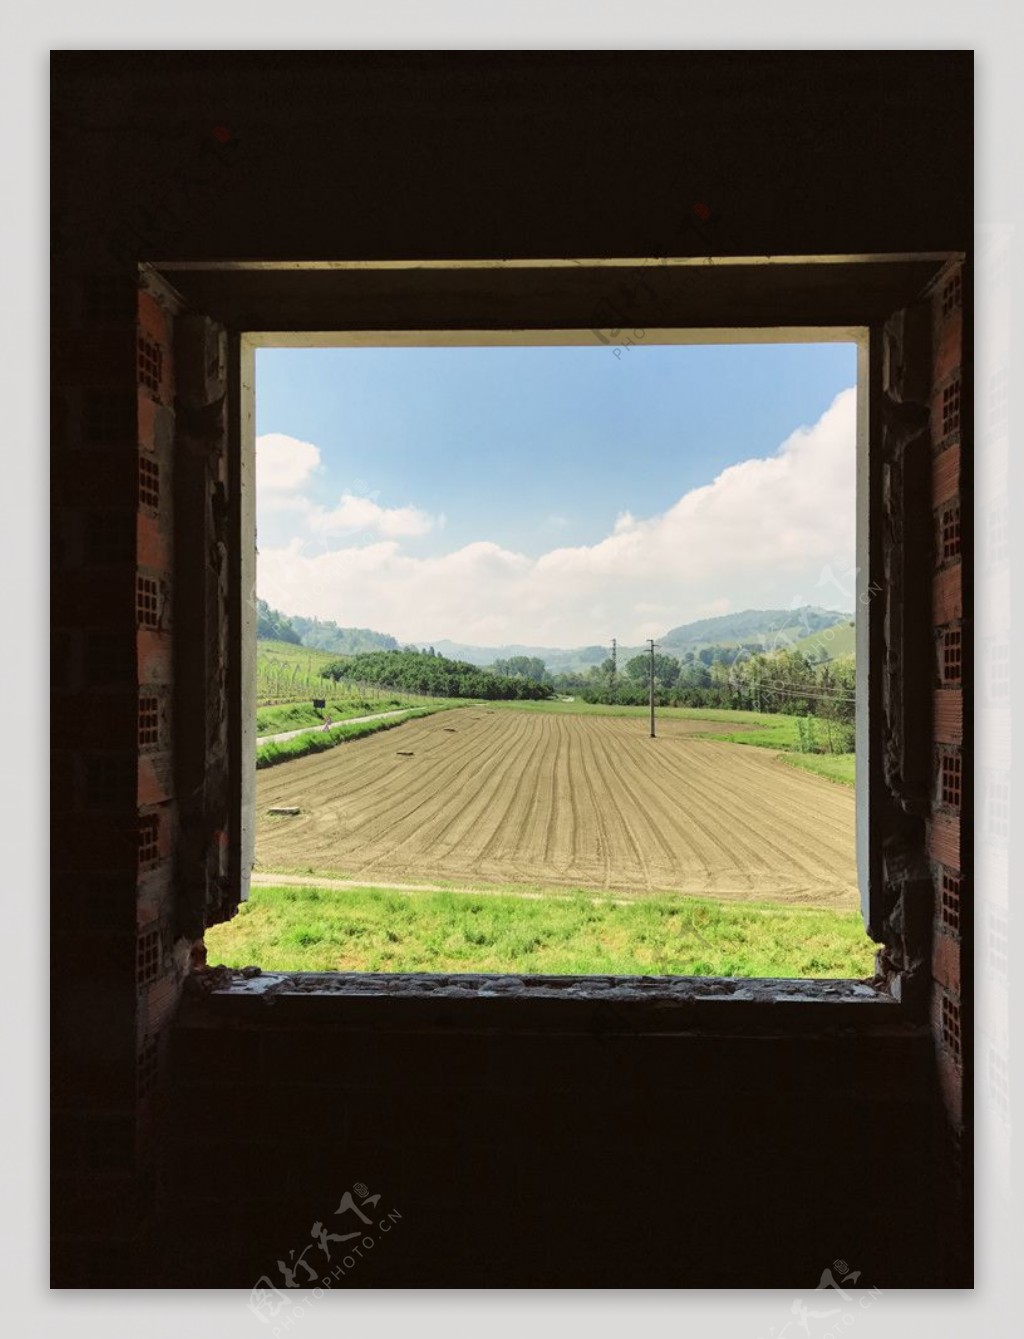 窗户眺望农场